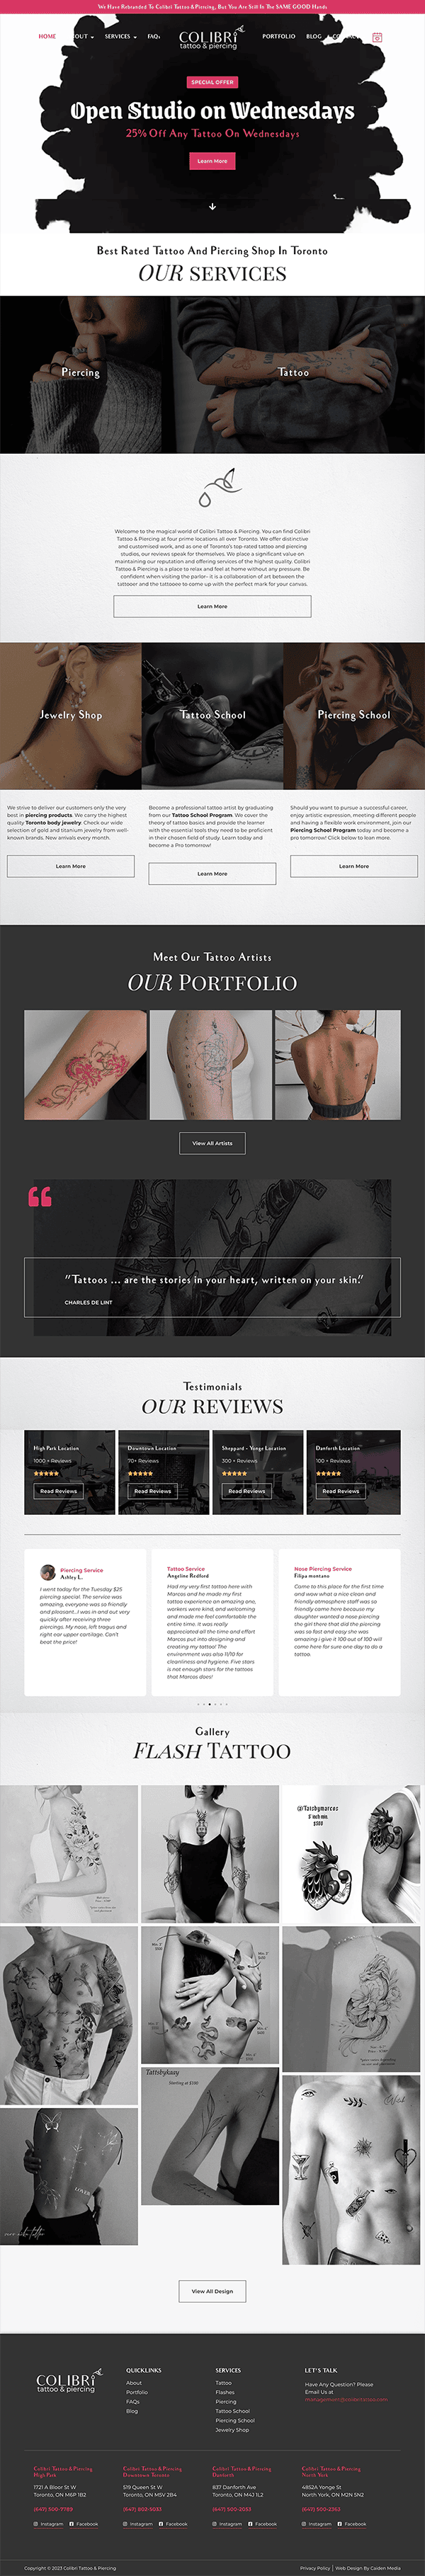 Colibri Tattoo Website